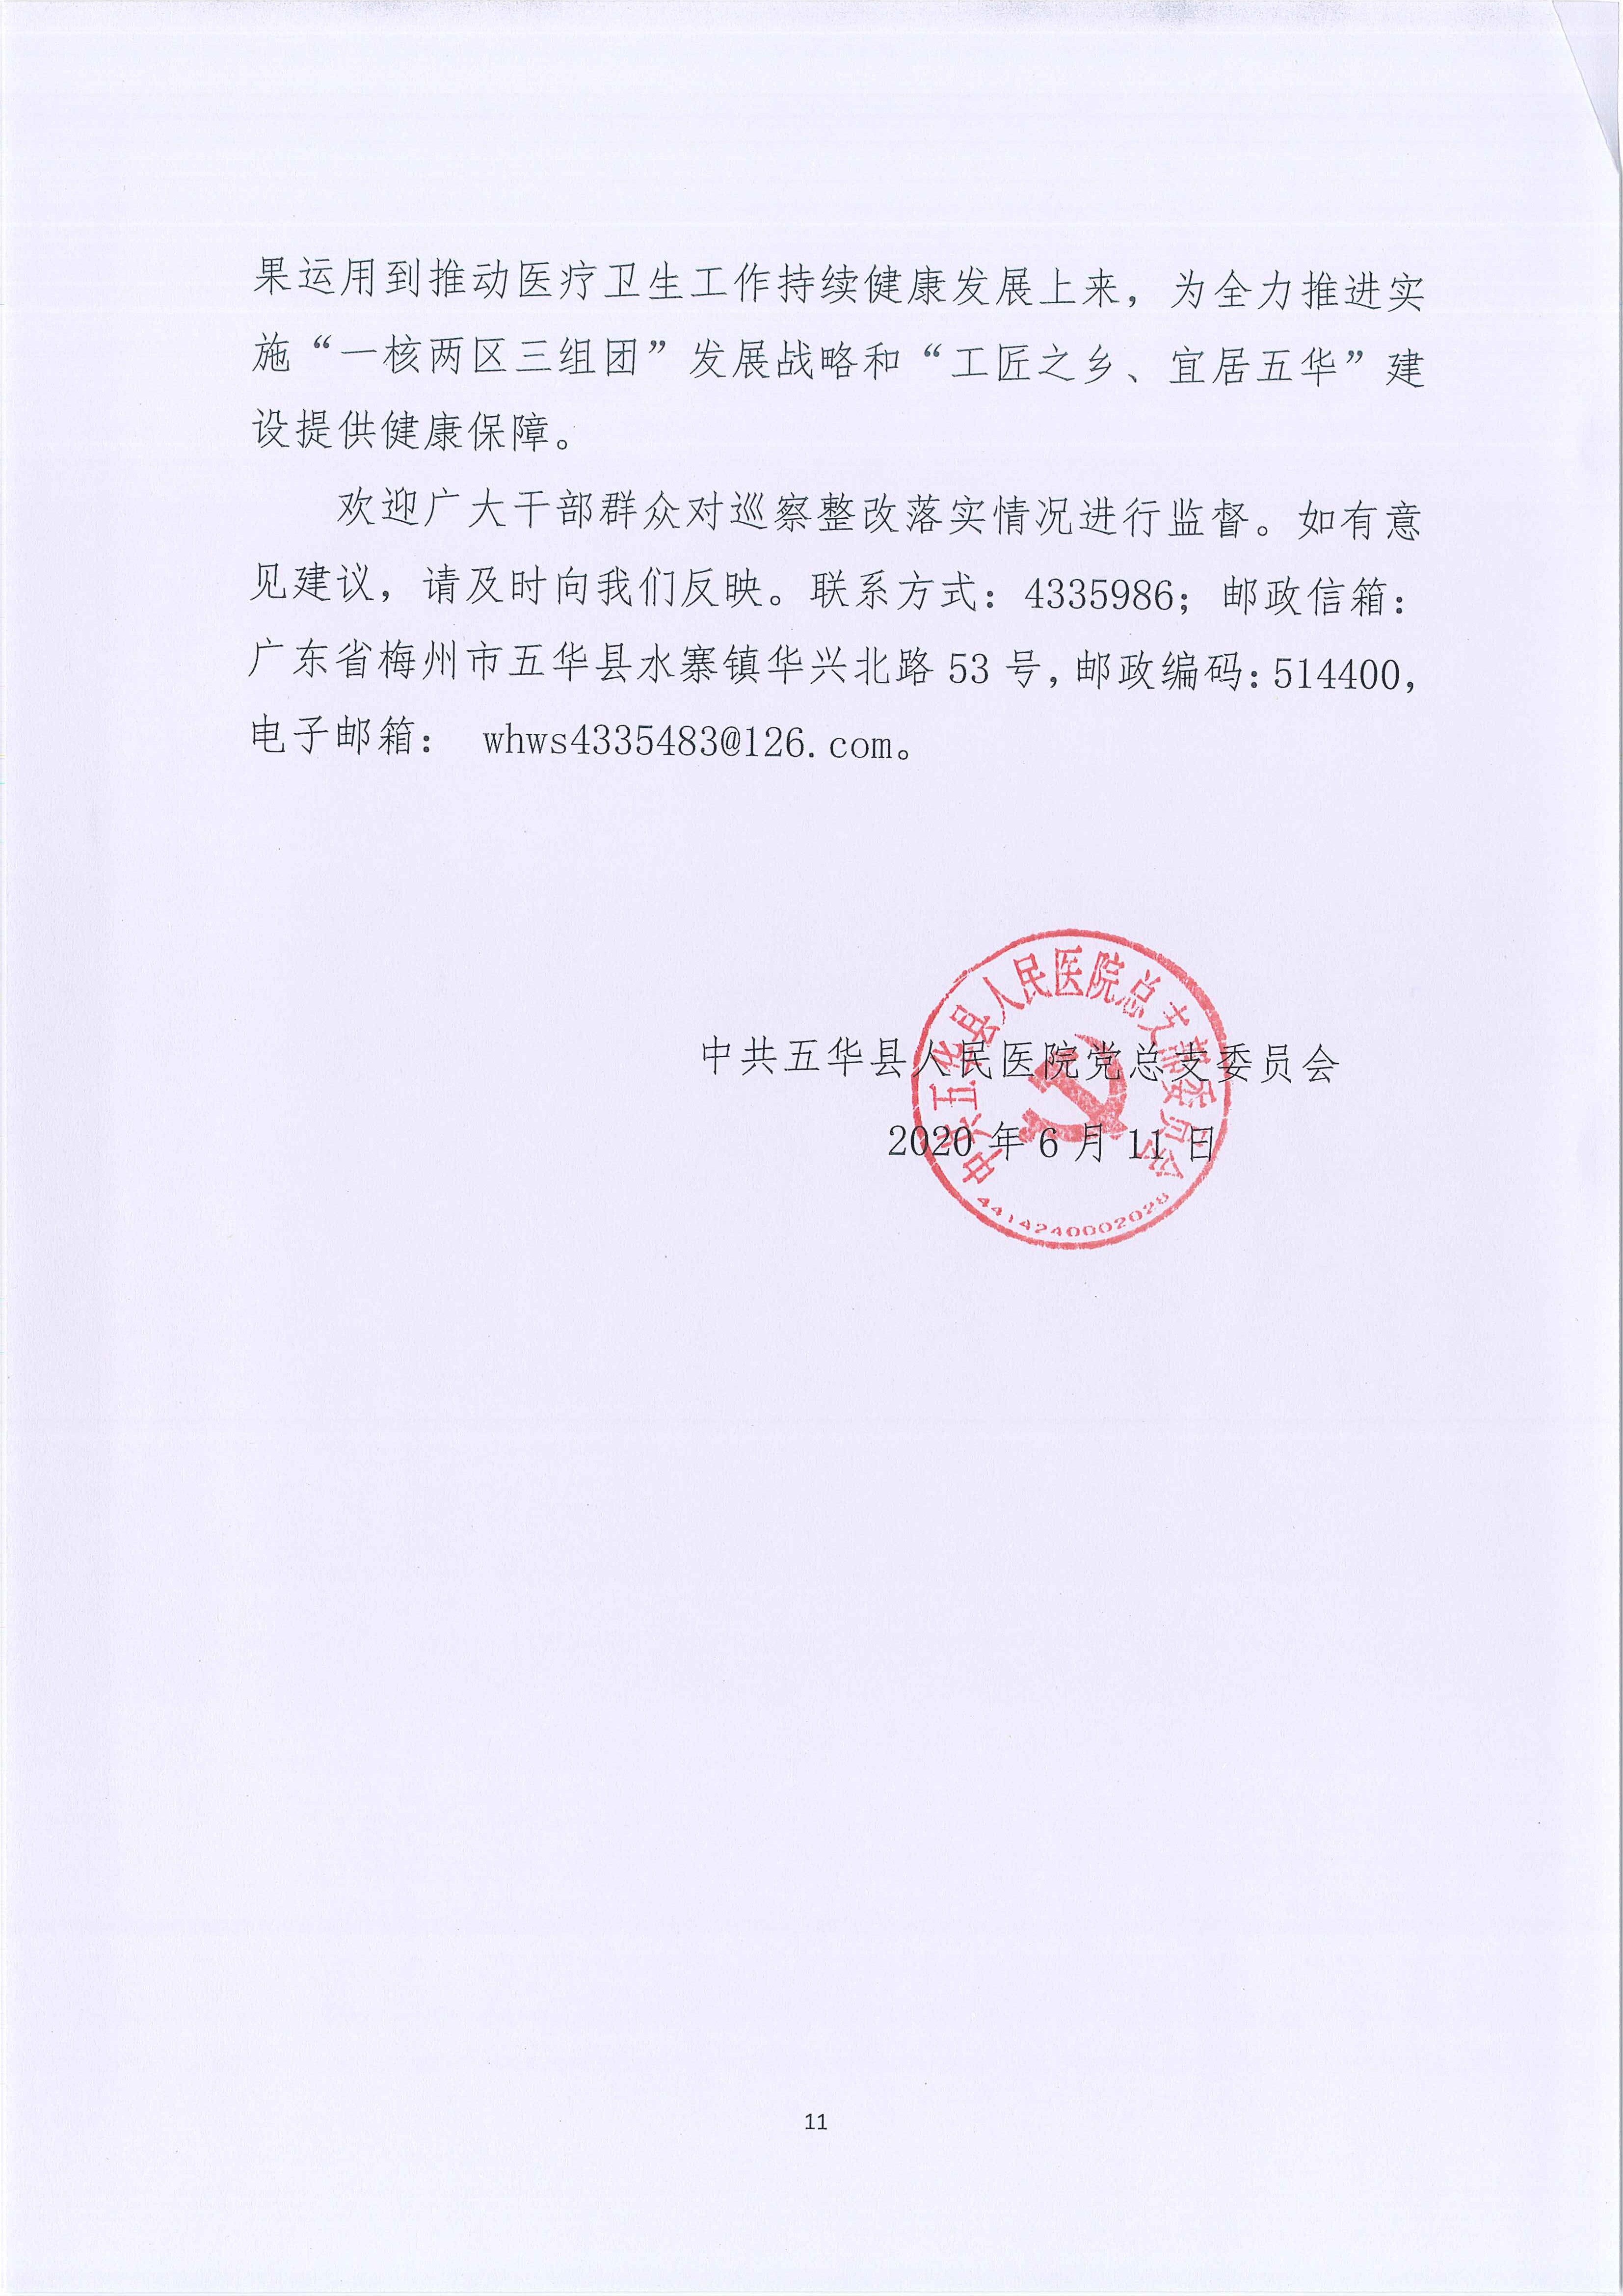 五华县人民医院关于巡察整改进展情况的通报_11